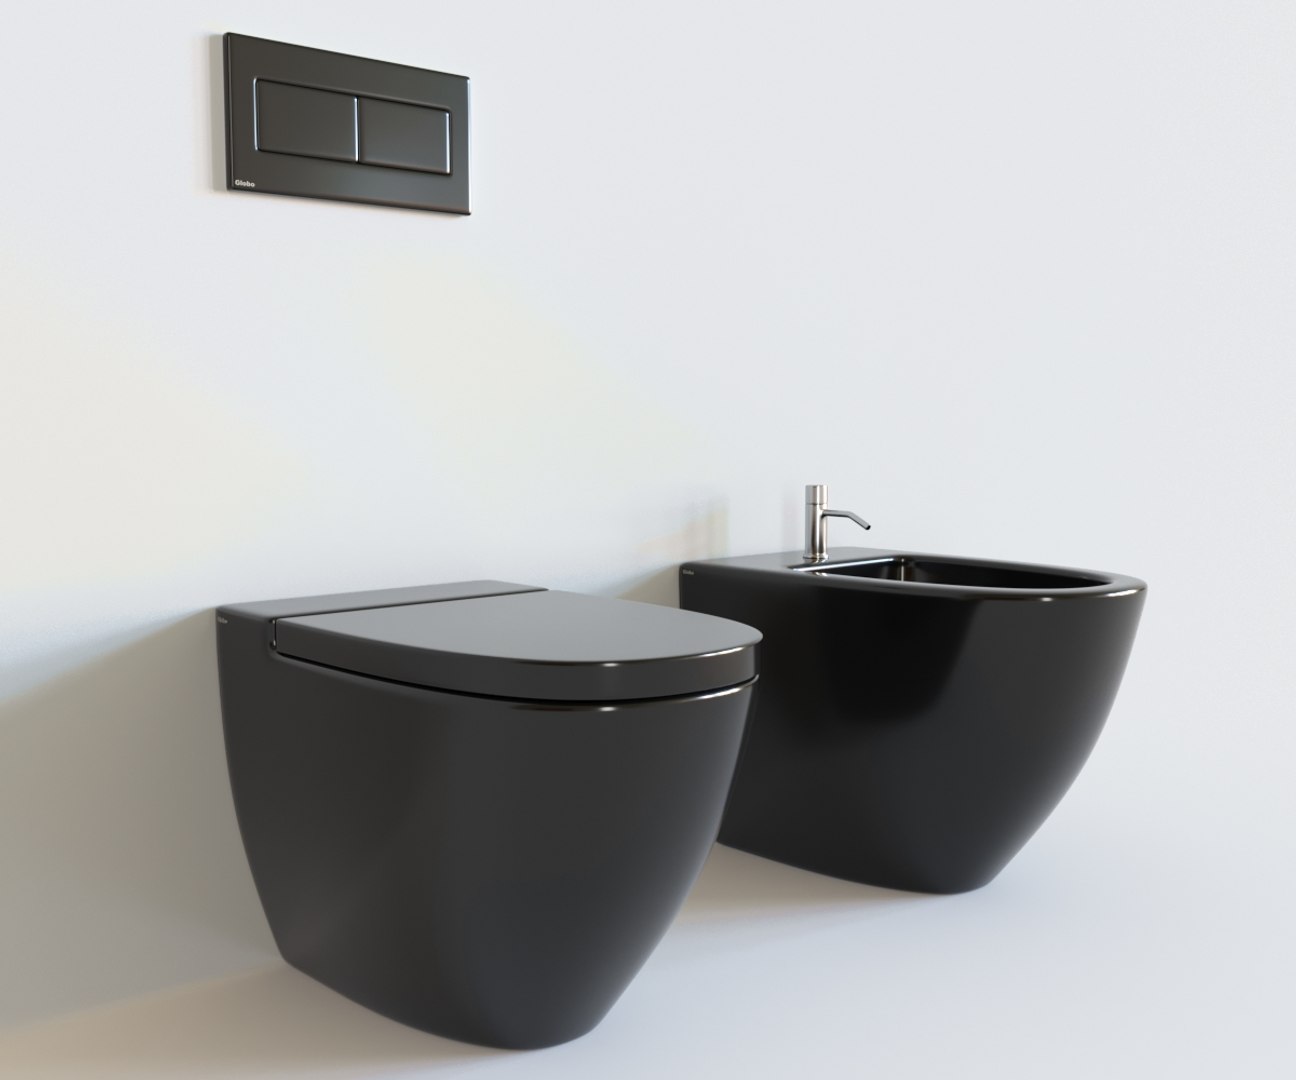 3D Realistic Toilet Interior Model - TurboSquid 1343242